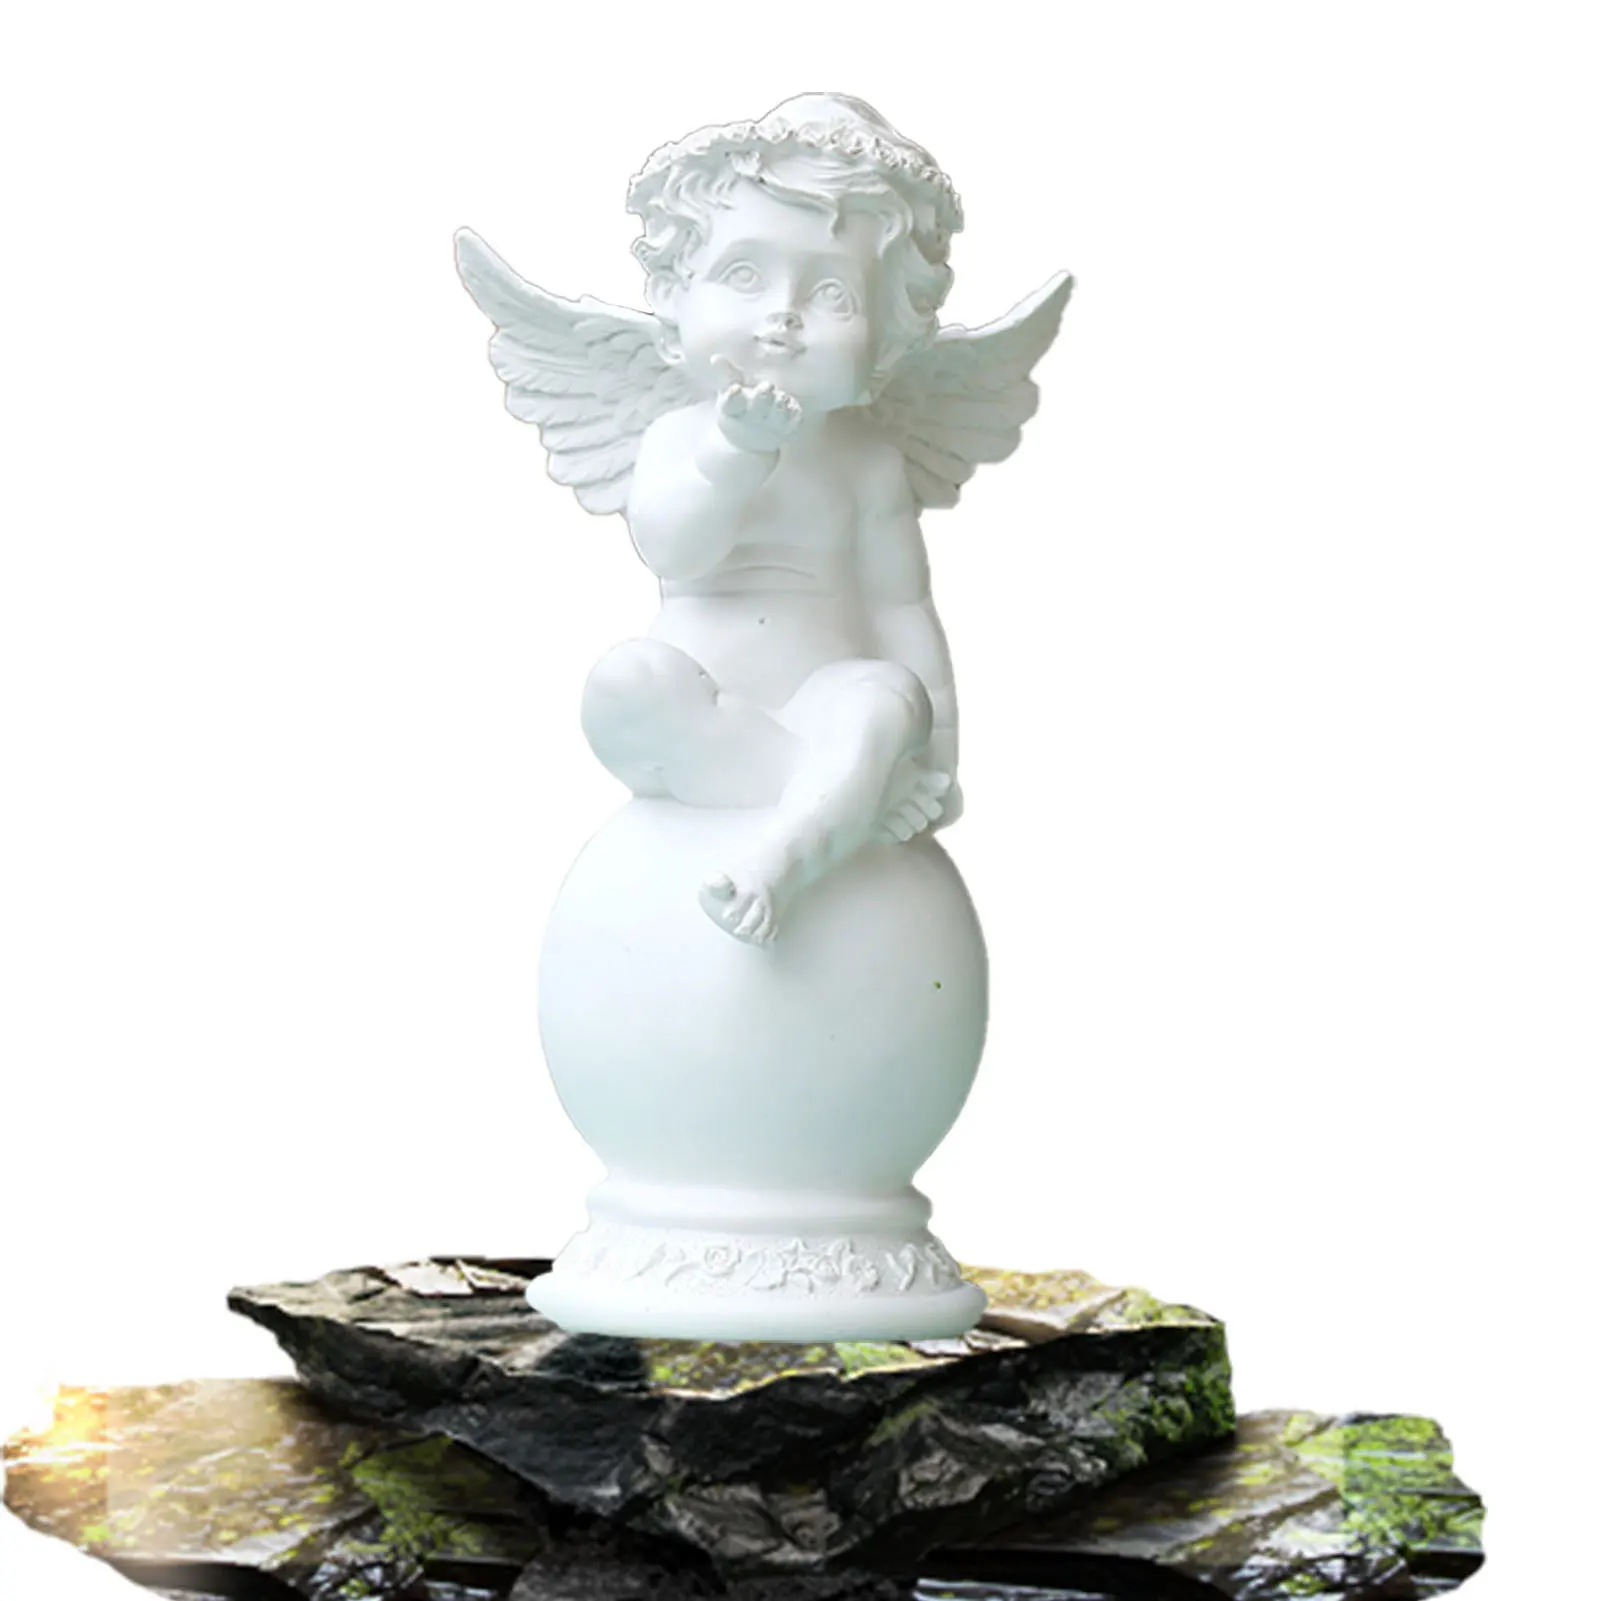 

Статуэтка Ангела из смолы, самодельные статуи Cherub для сада, молитва и мышление, скульптура Чистого Белого Ангела для украшения дома